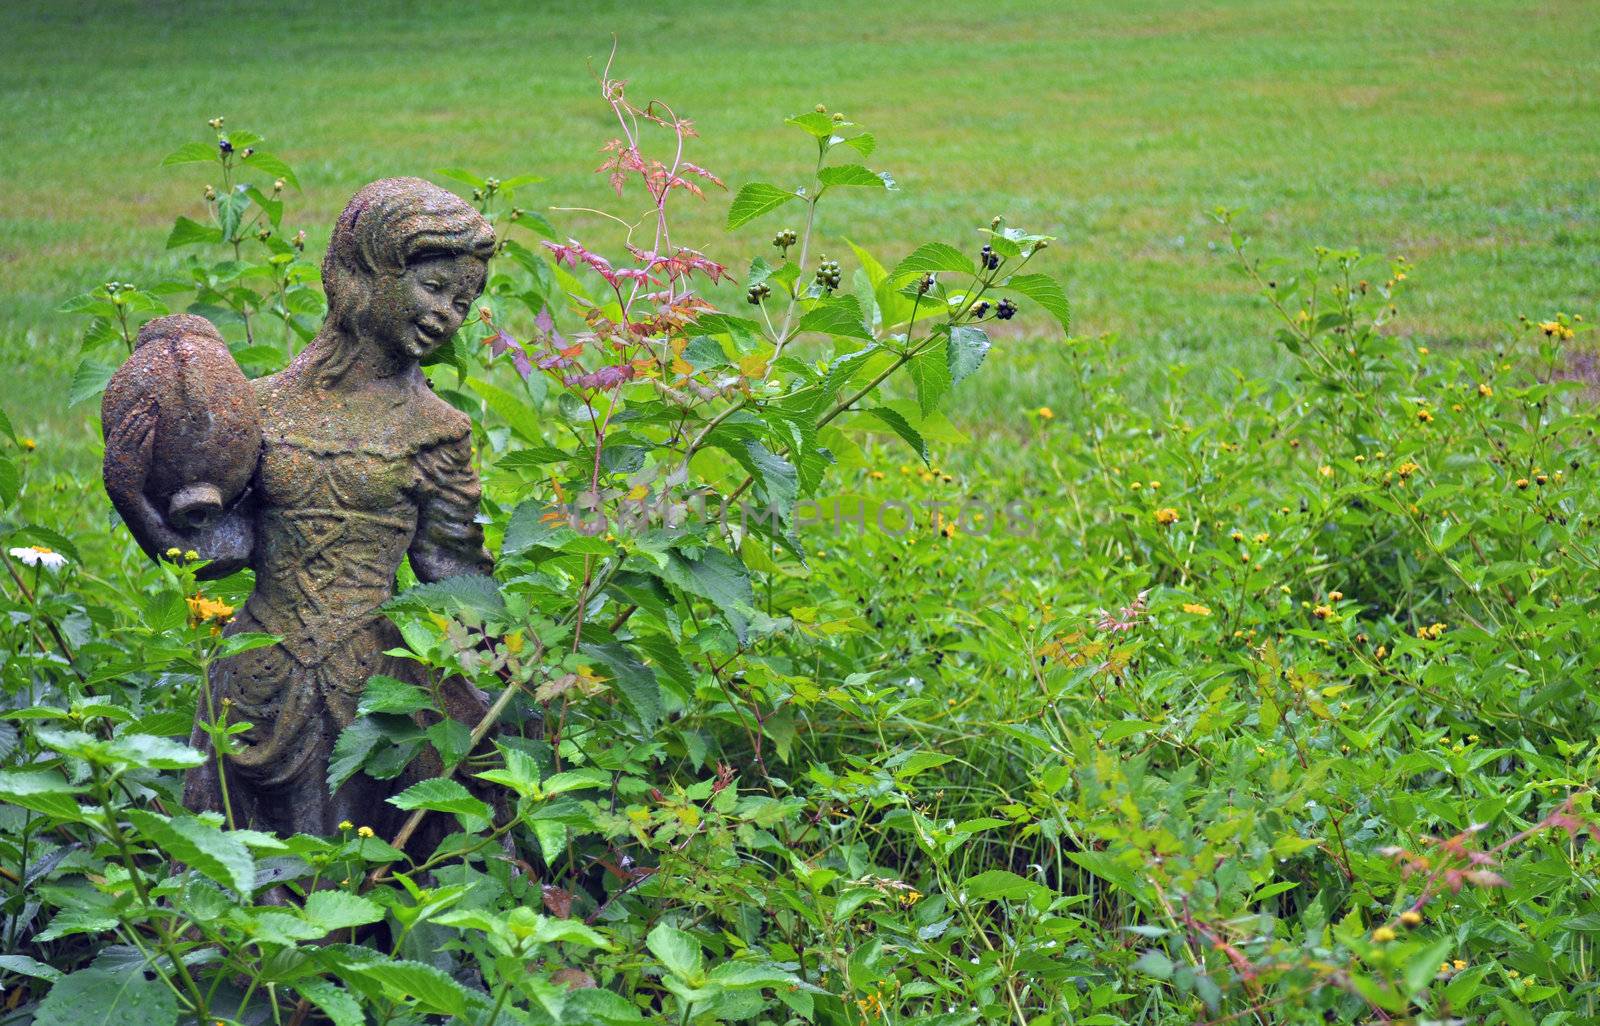 Girl statue in garden - background 2